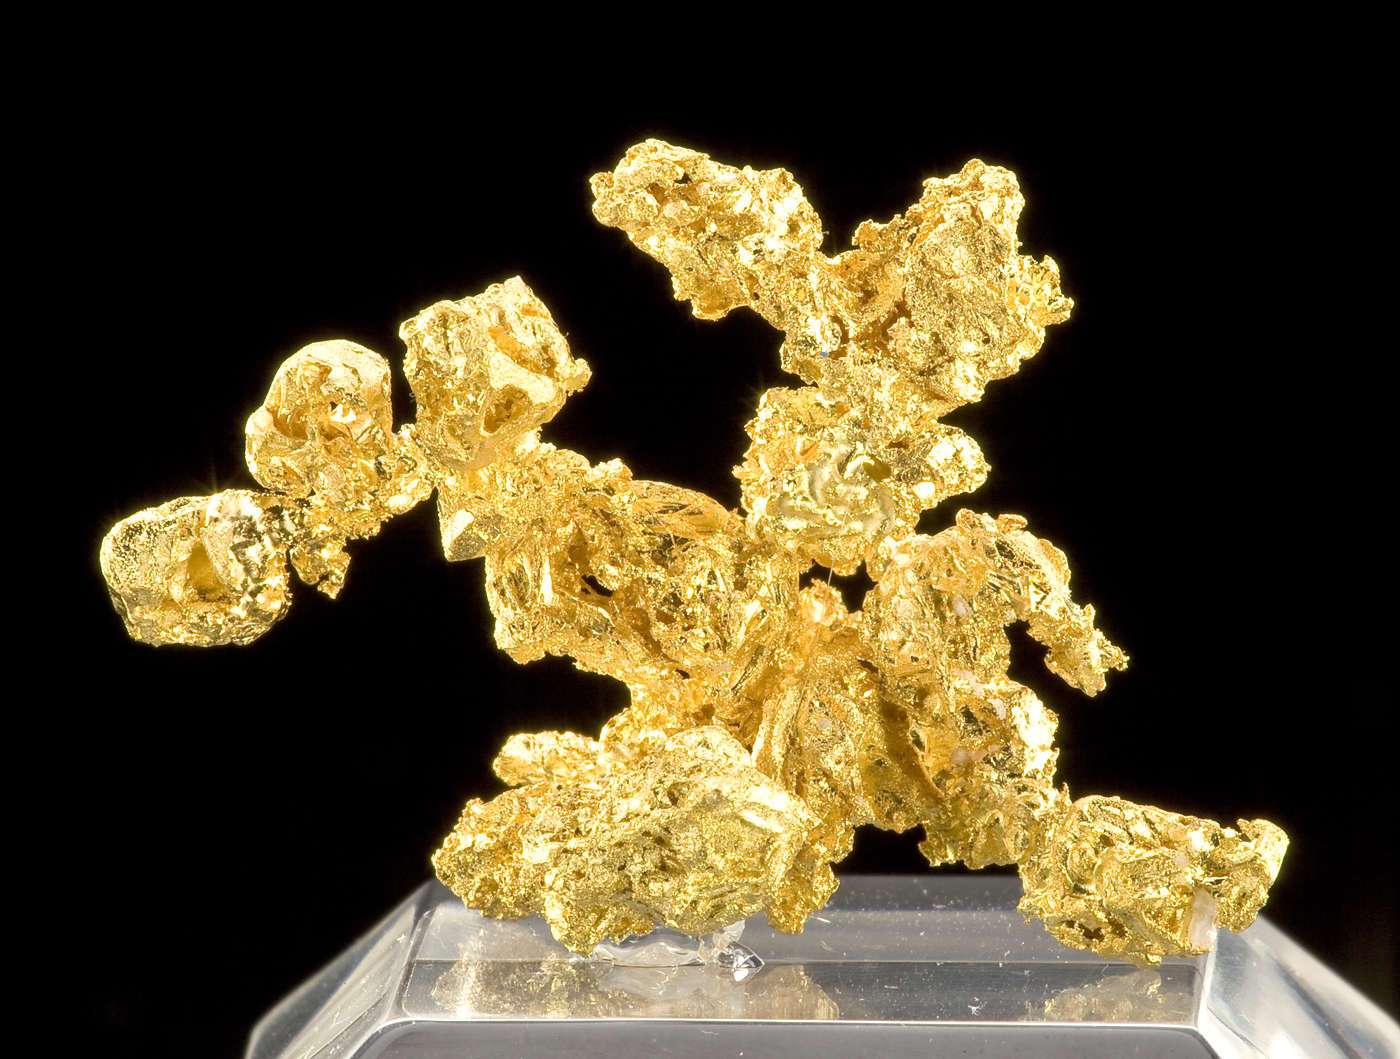 Золотой тин. Золото / Aurum (au). Золото химия. Золото в чистом виде. Золото химический элемент.